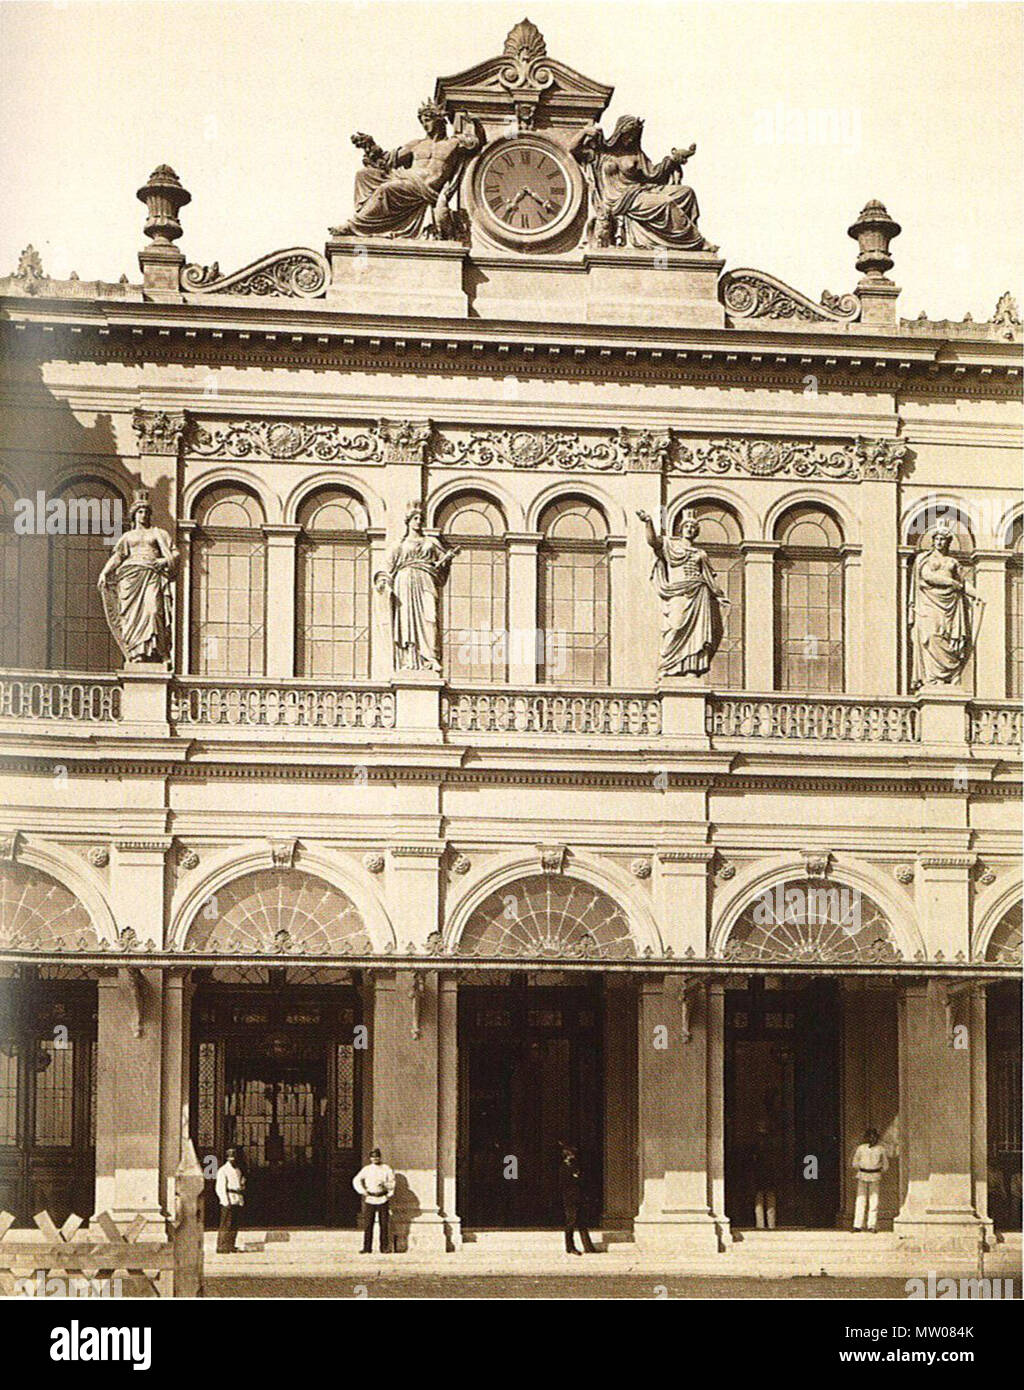 . Eingaenge an der Abfahrsseite, Ostbahnhof in Wien. 1880. Atelier M. Frankenstein 572 Staatsbahnhof Abfahrtsseite 1880 Stock Photo